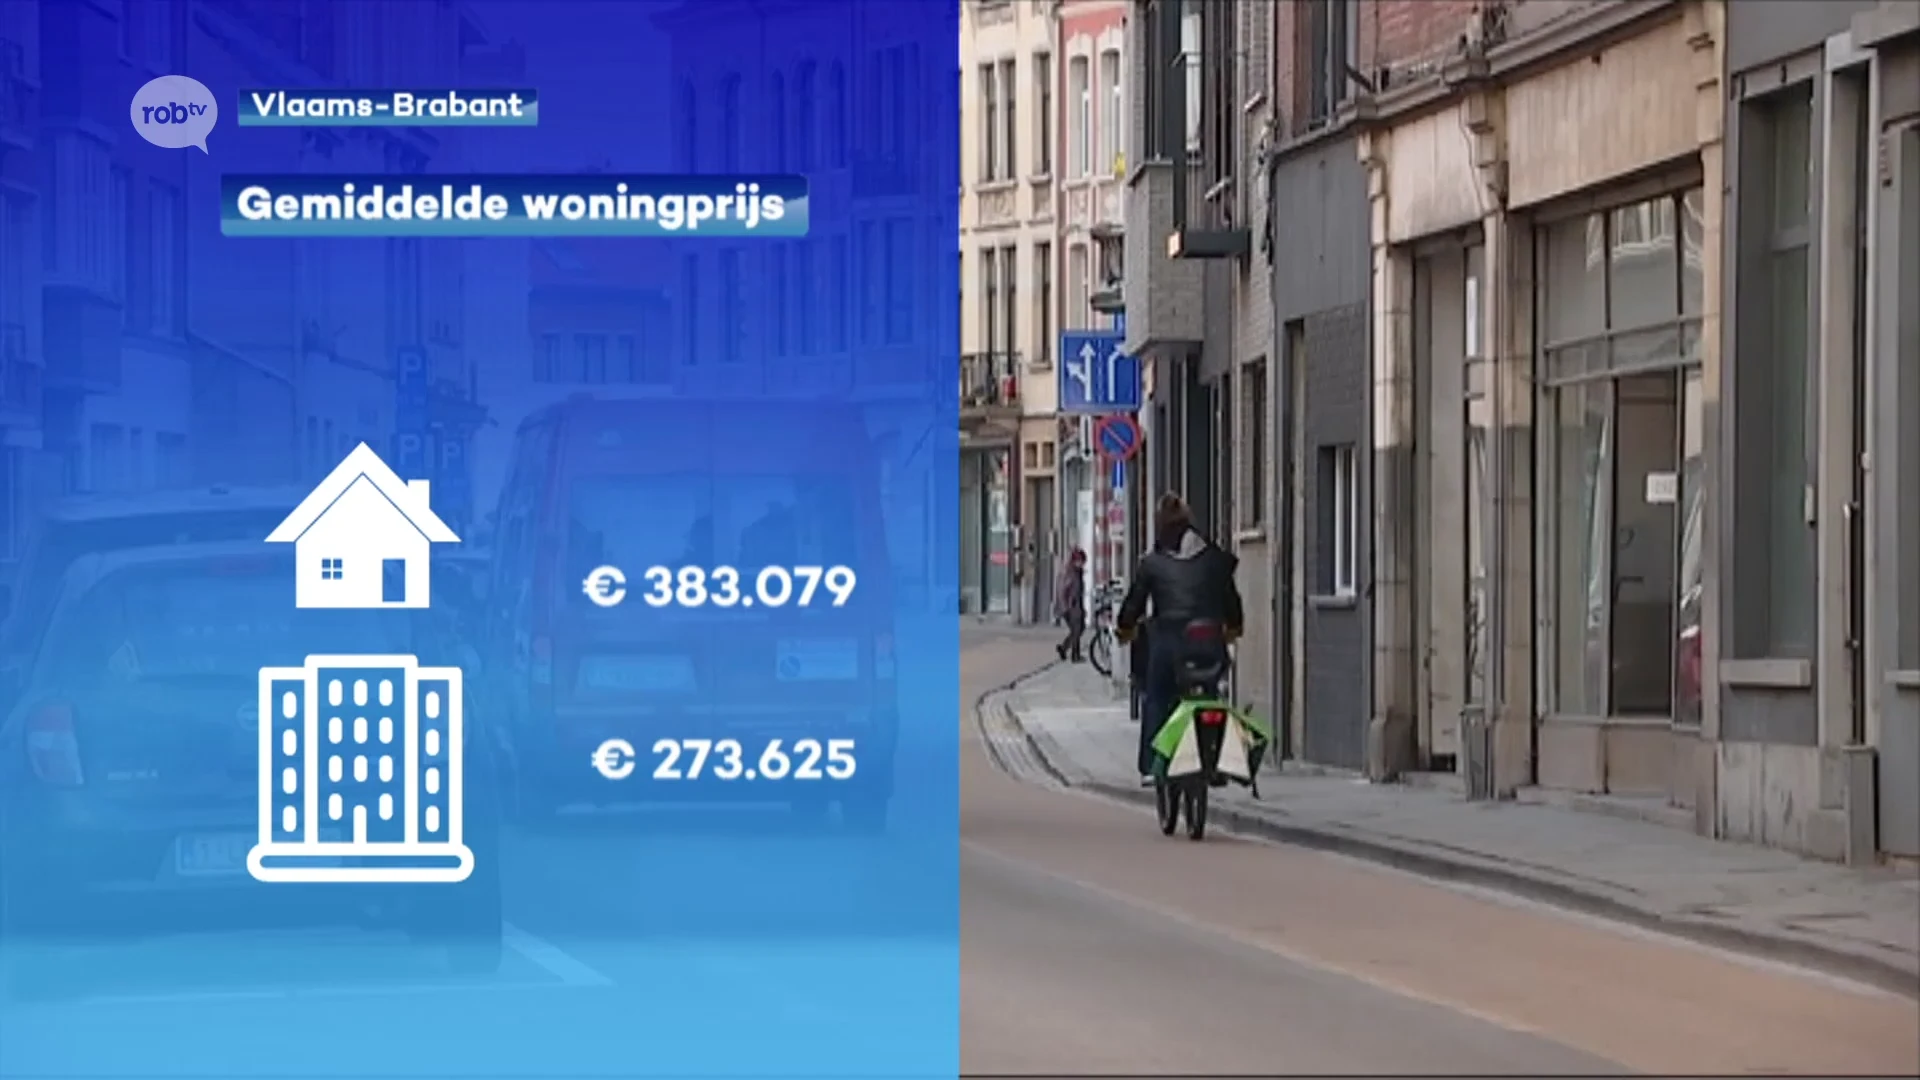 Huizenprijzen in onze regio blijven stijgen: 8% duurder dan vorig jaar